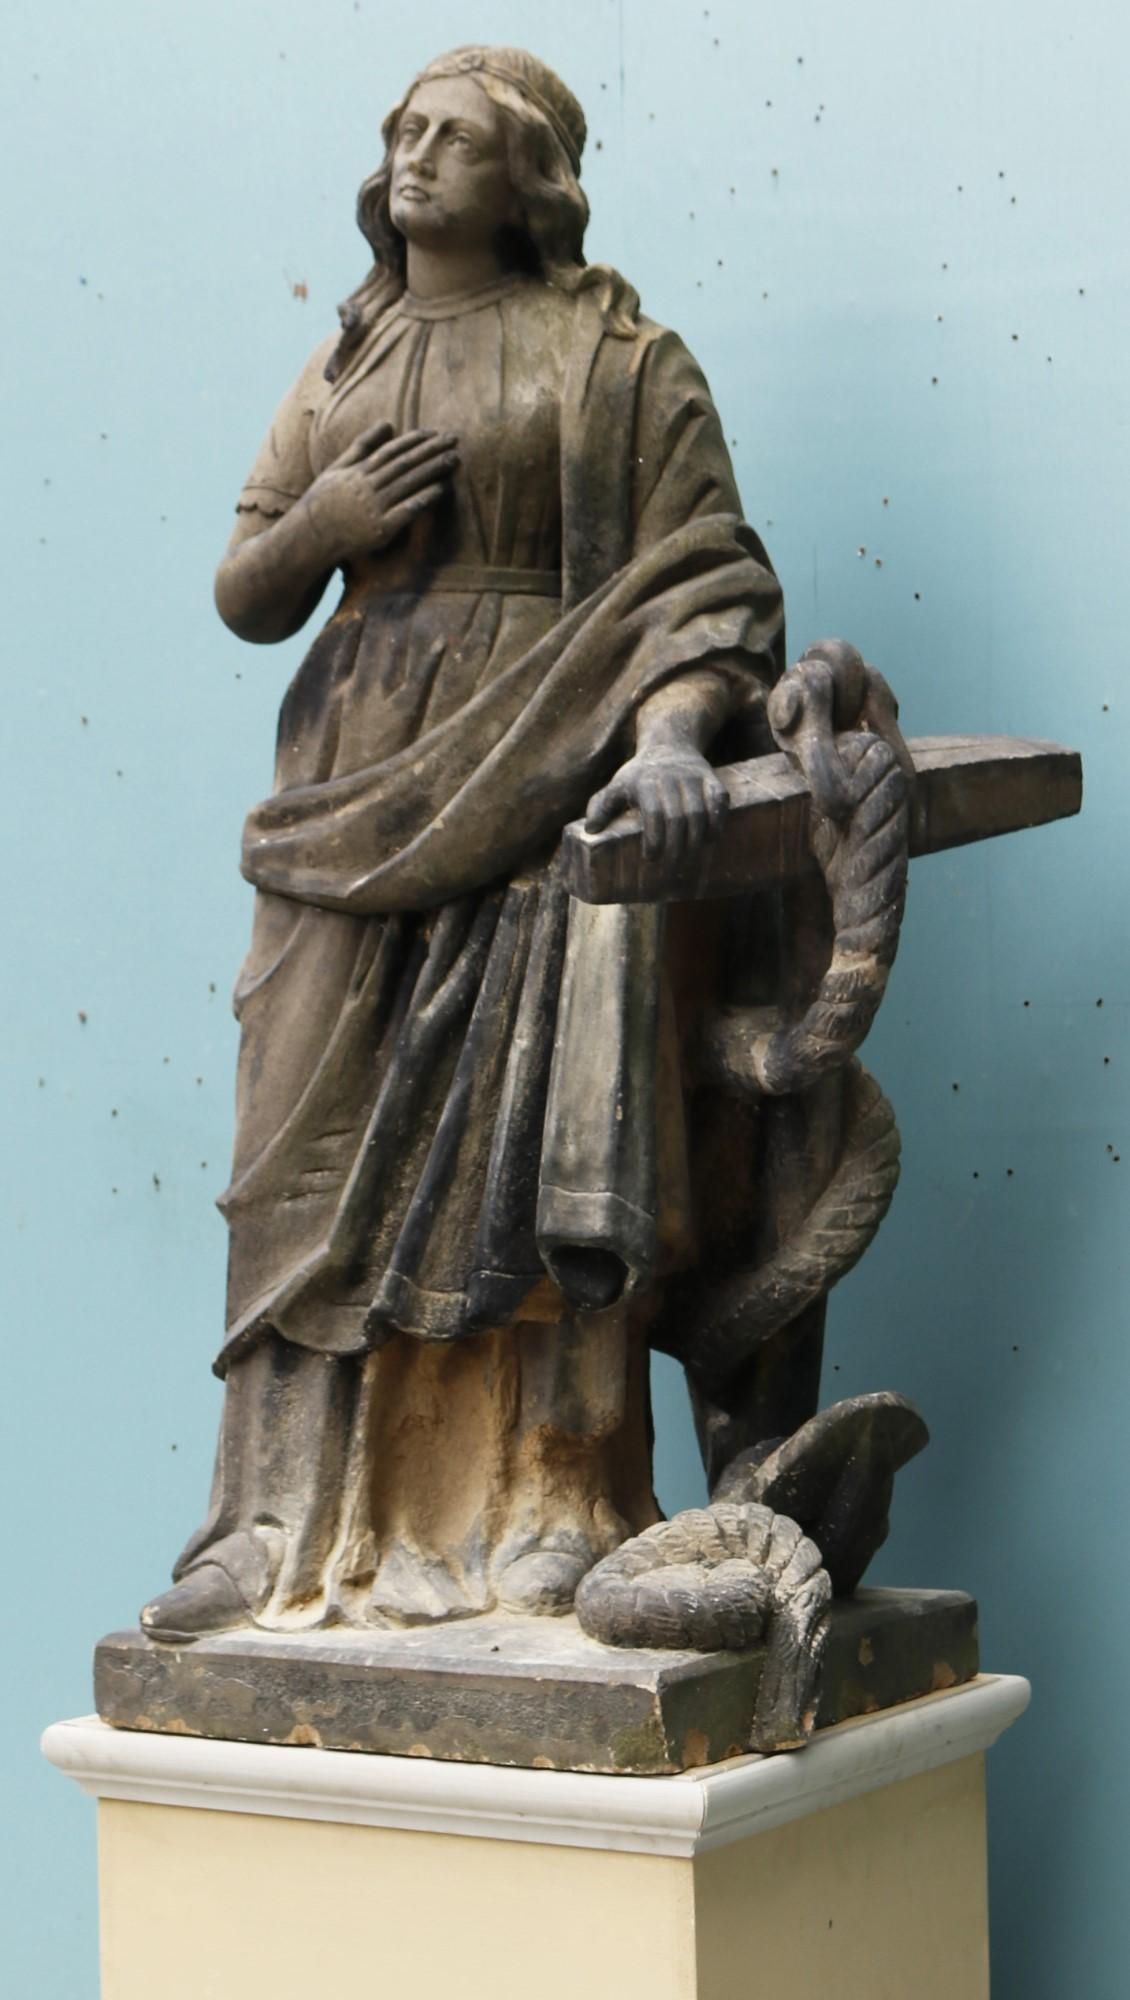 Eine antike geschnitzte Steinstatue der Hoffnung, die auf einem Anker ruht.

Zusätzliche Abmessungen:

Höhe 95 cm

Sockel 37 x 37 cm

Maximale Breite 47 cm

Maximale Tiefe 44 cm